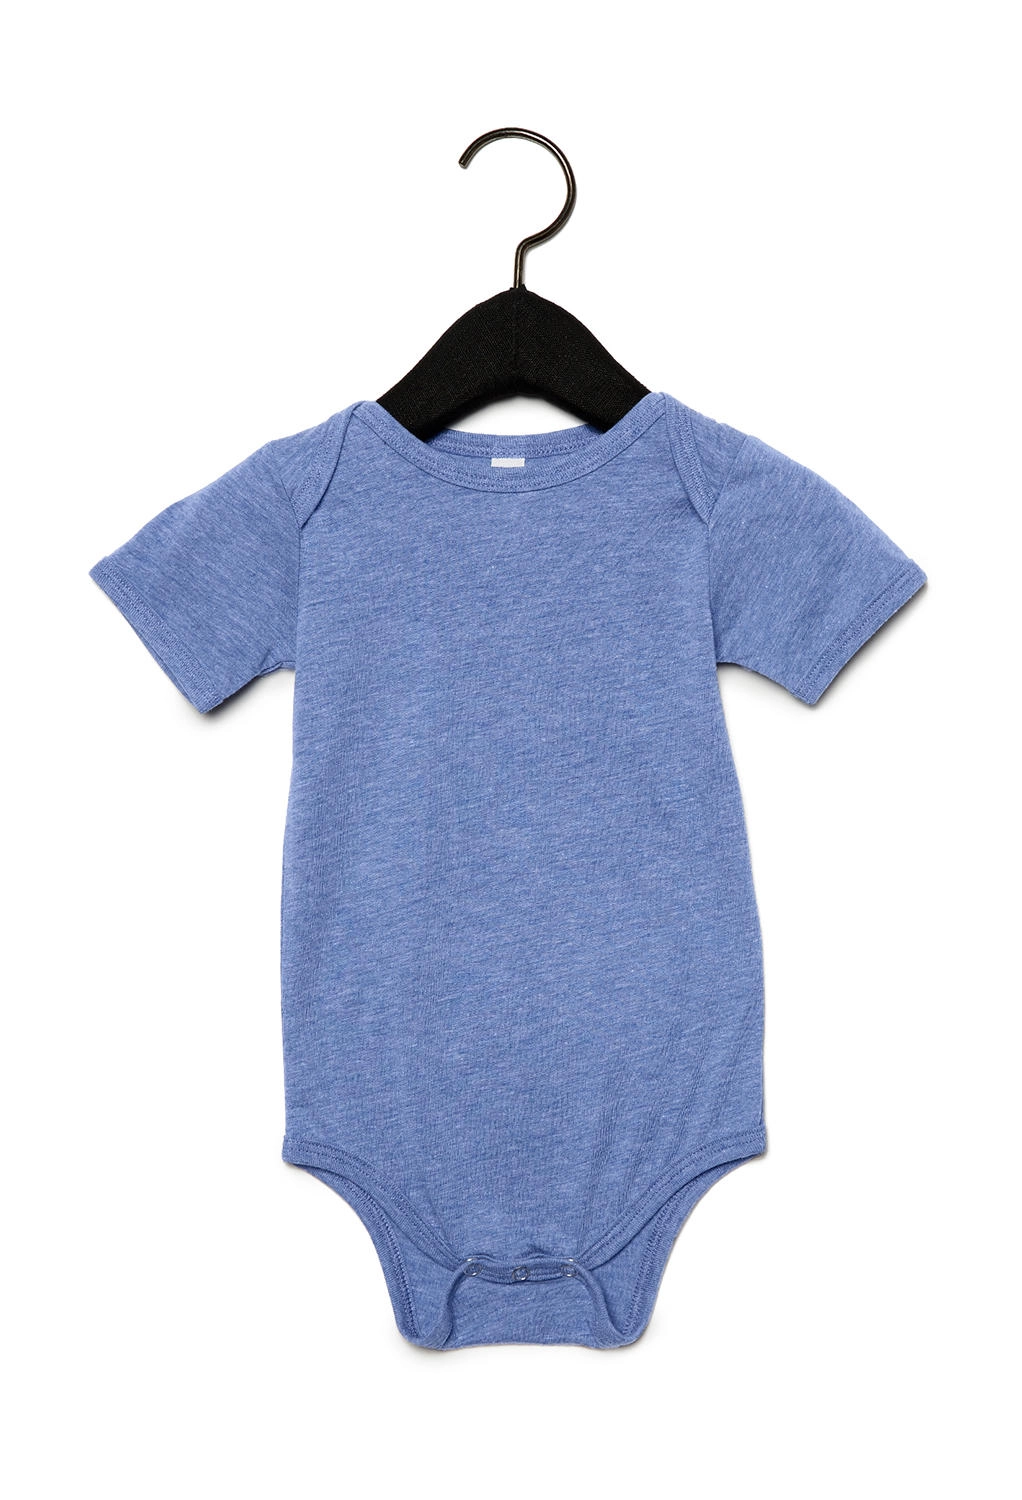 Baby Triblend Short Sleeve Onesie zum Besticken und Bedrucken in der Farbe Blue Triblend mit Ihren Logo, Schriftzug oder Motiv.